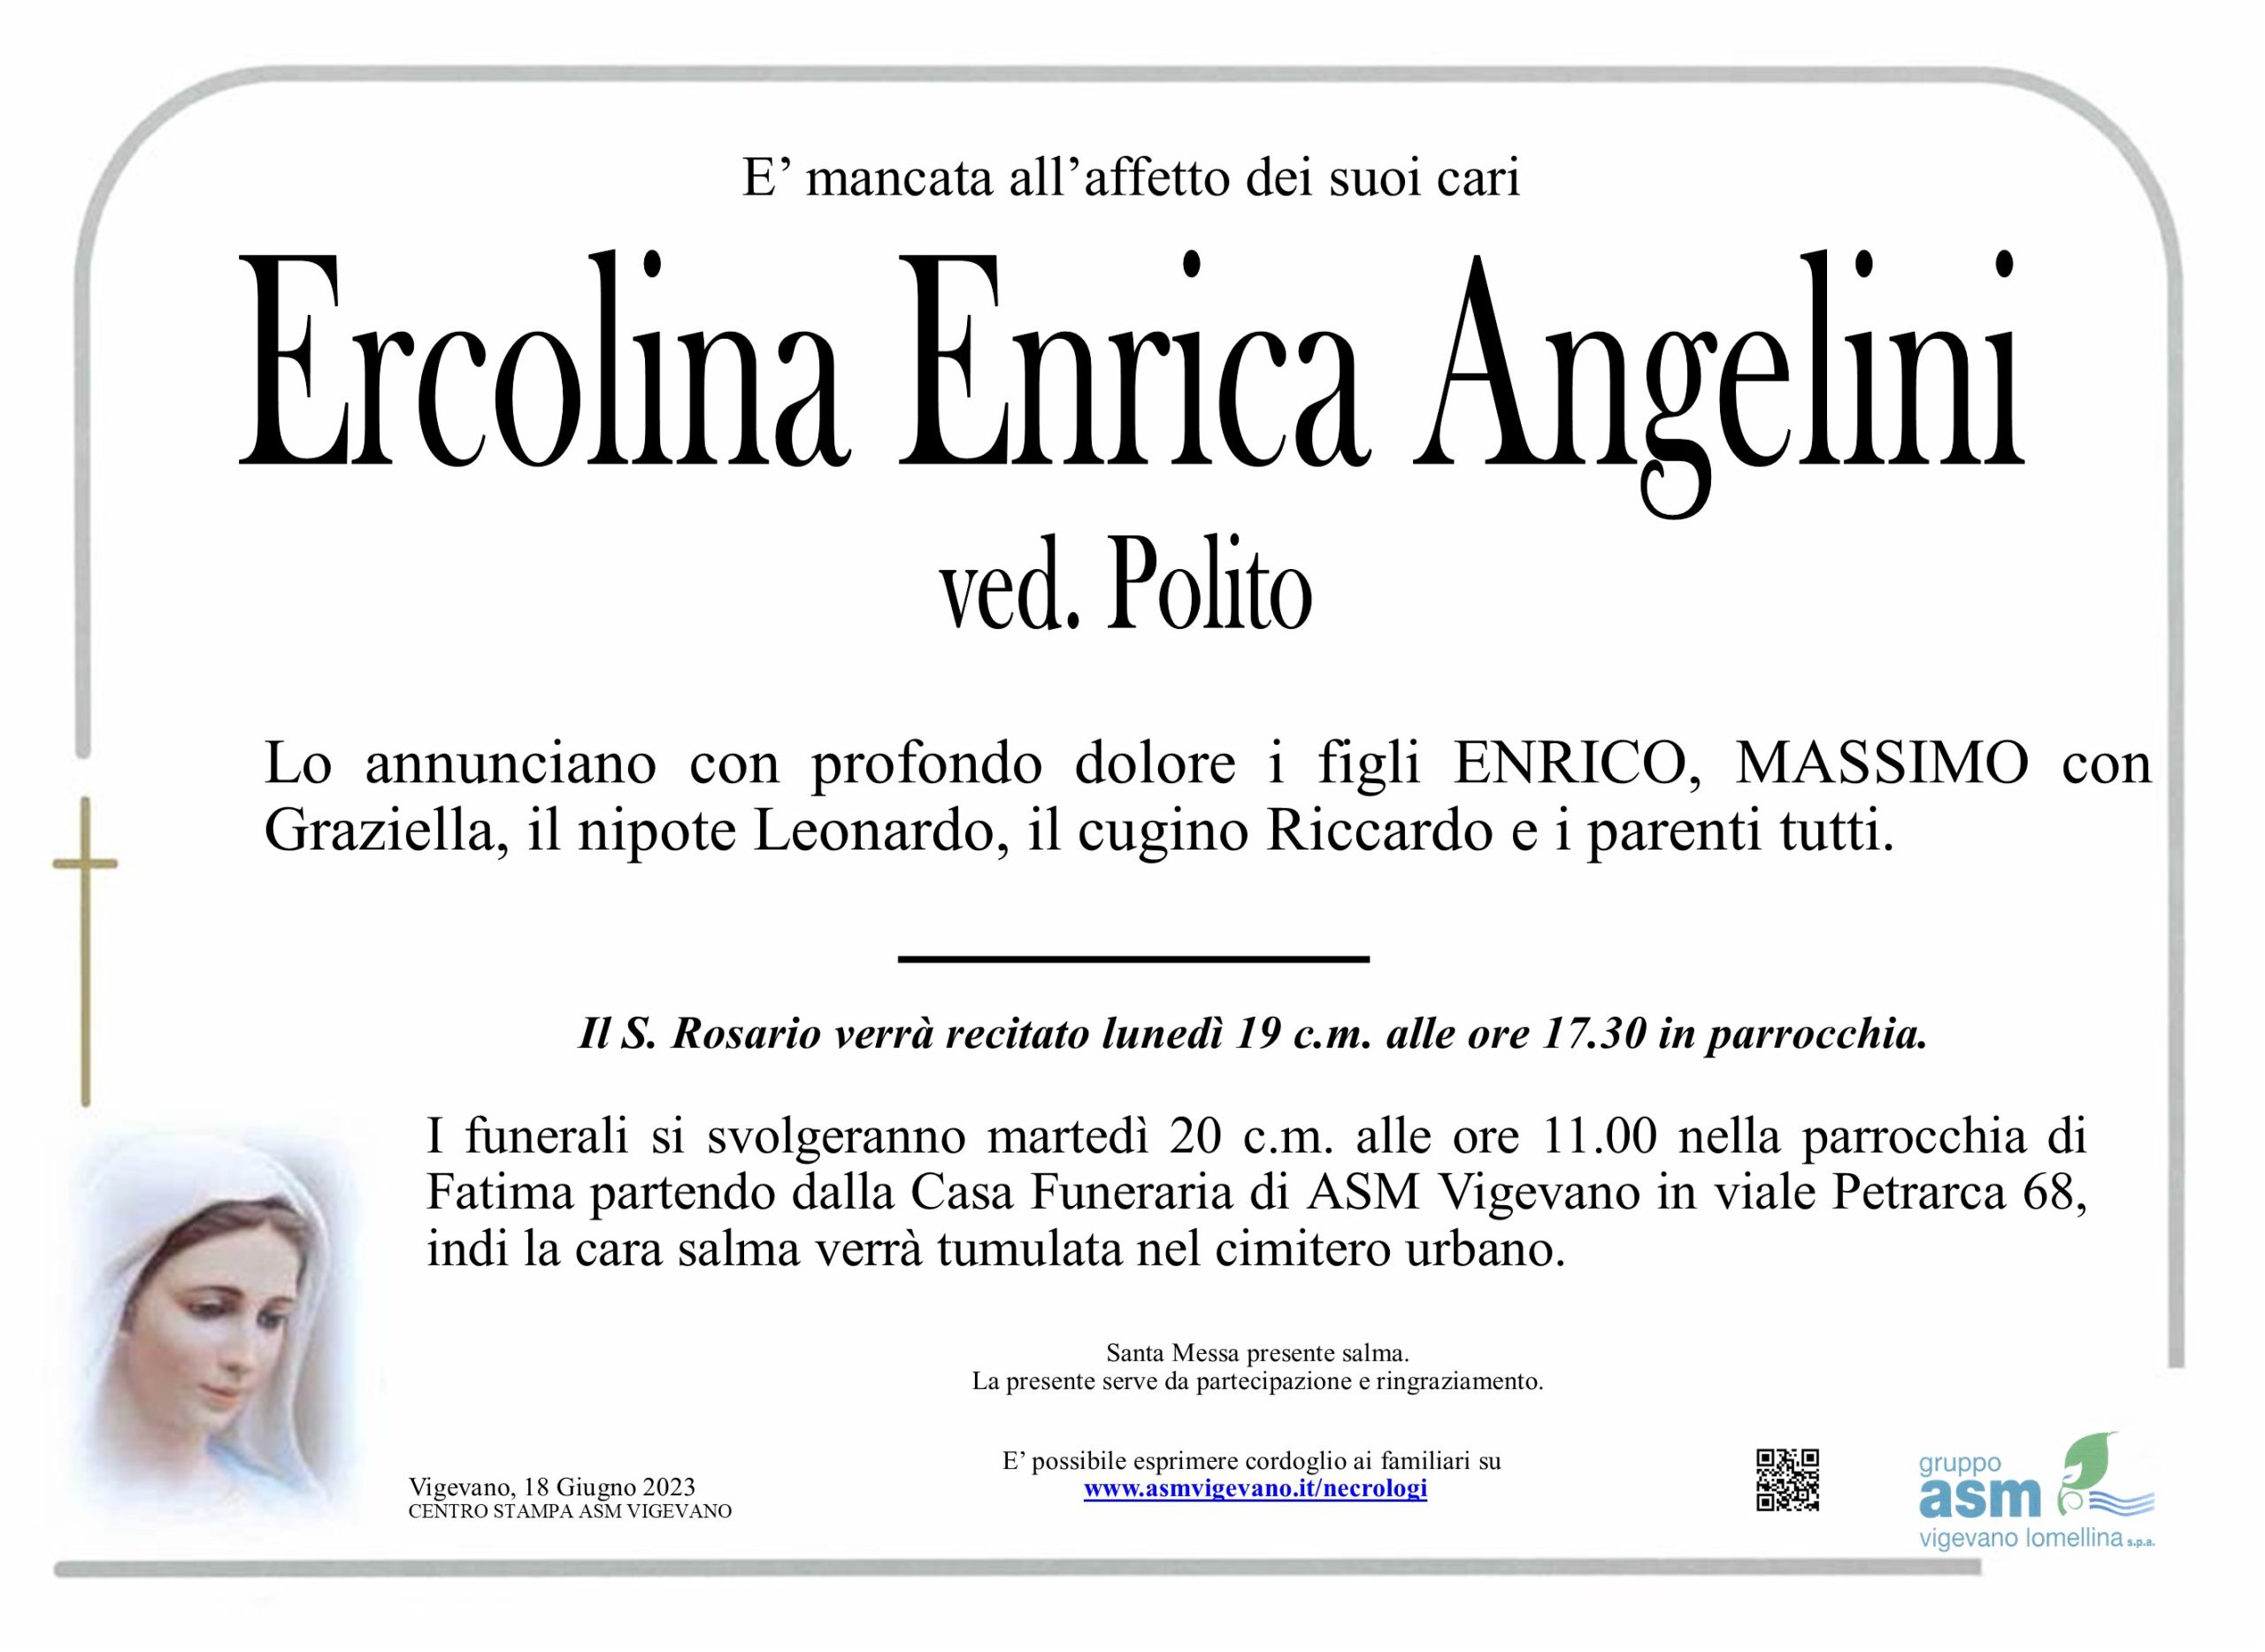 Ercolina Enrica Angelini